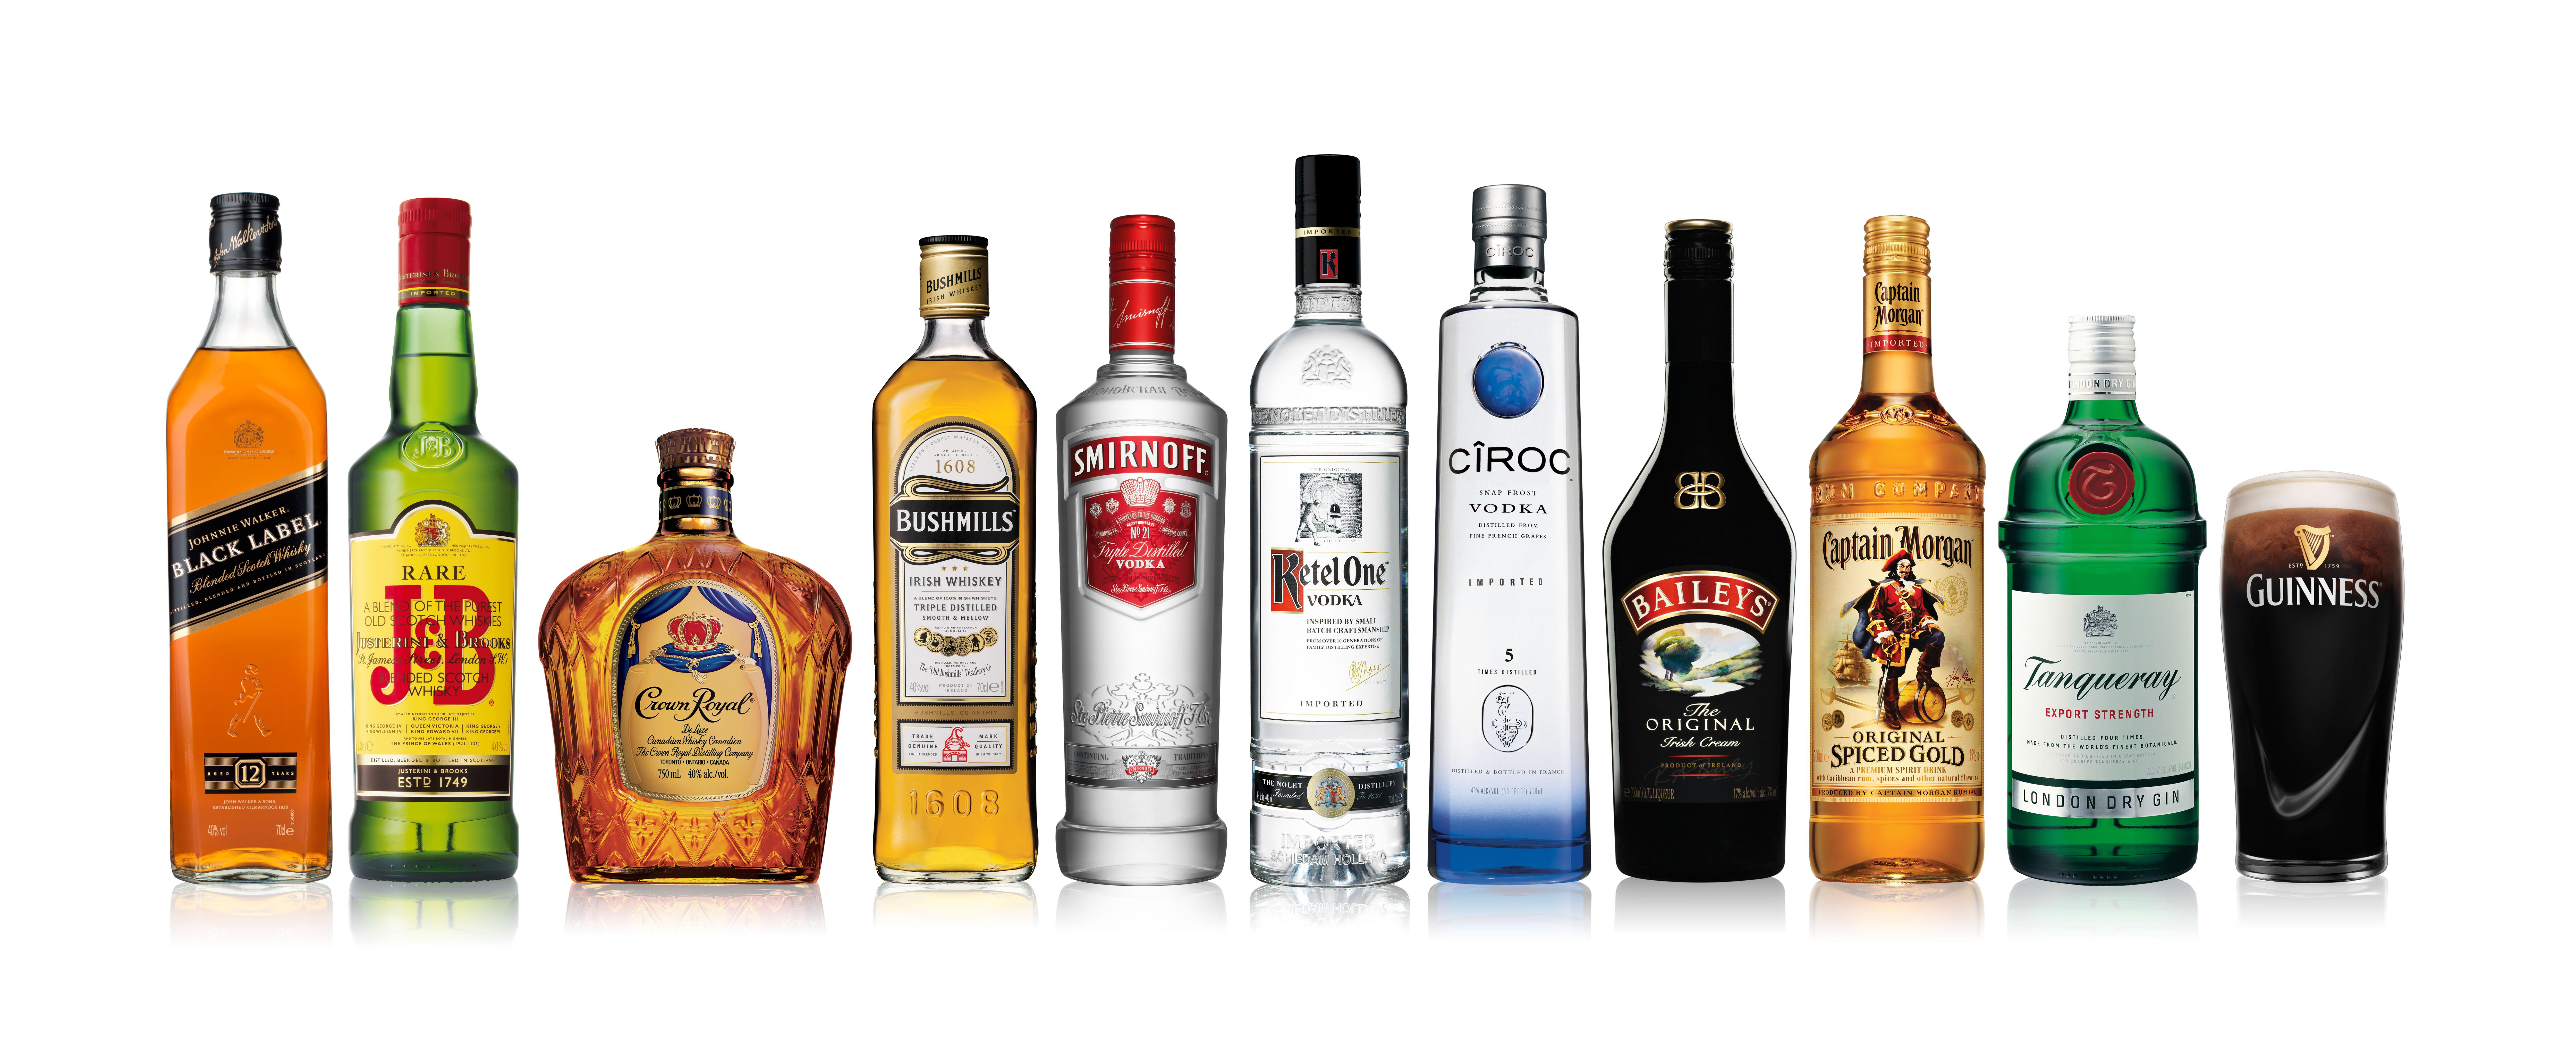 Sterke drank aanschaffen voor een feestje, altijd een verstandige keuze! • De